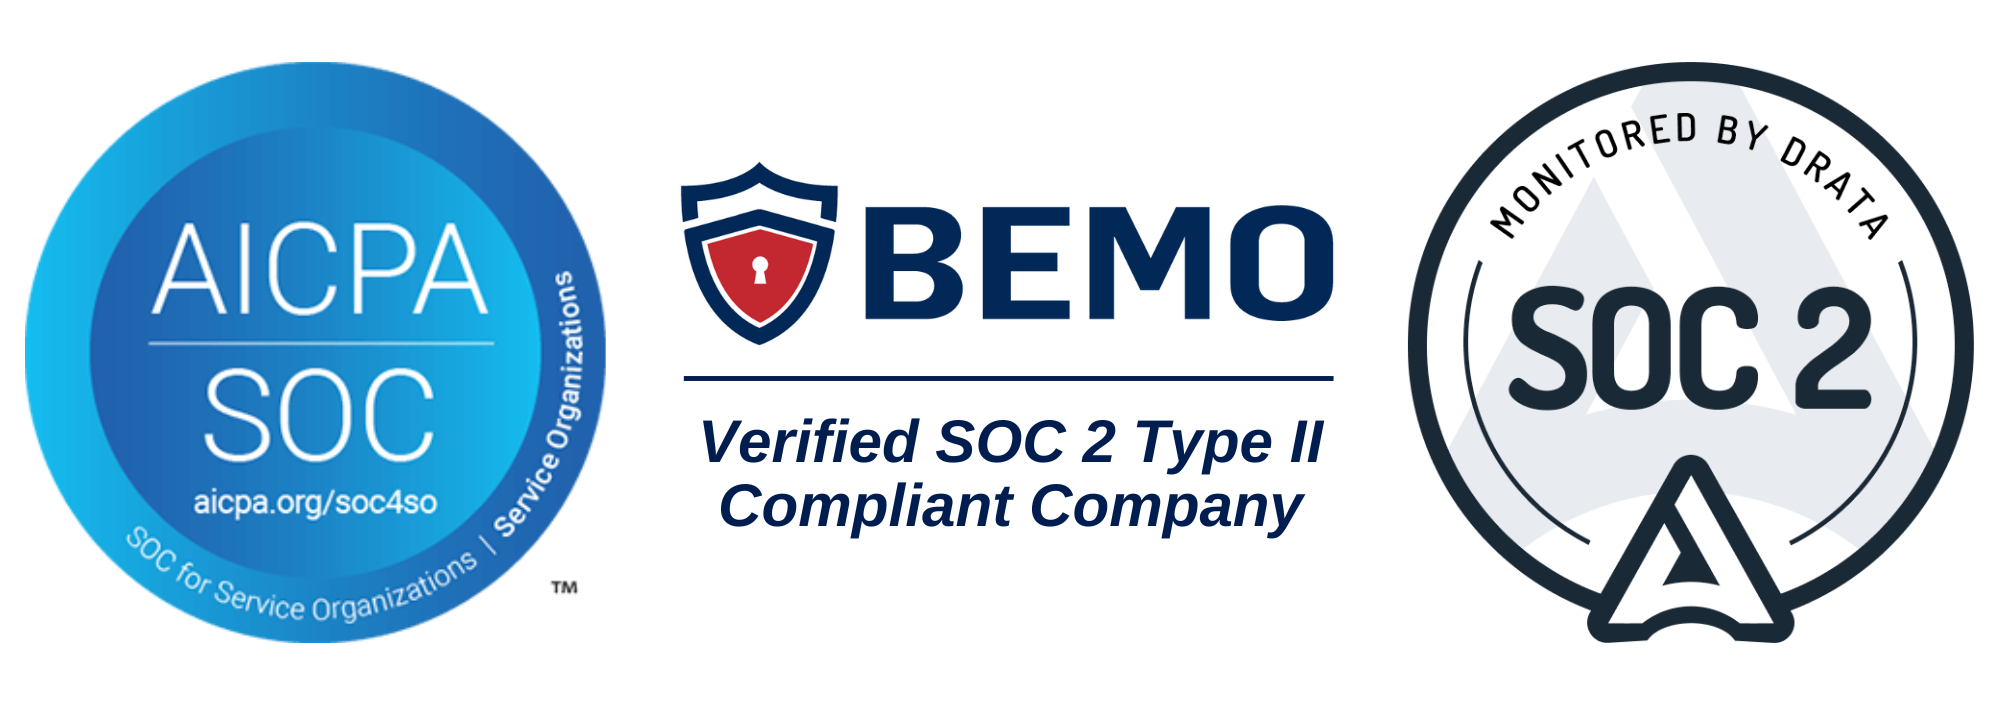 soc 2 verified companies